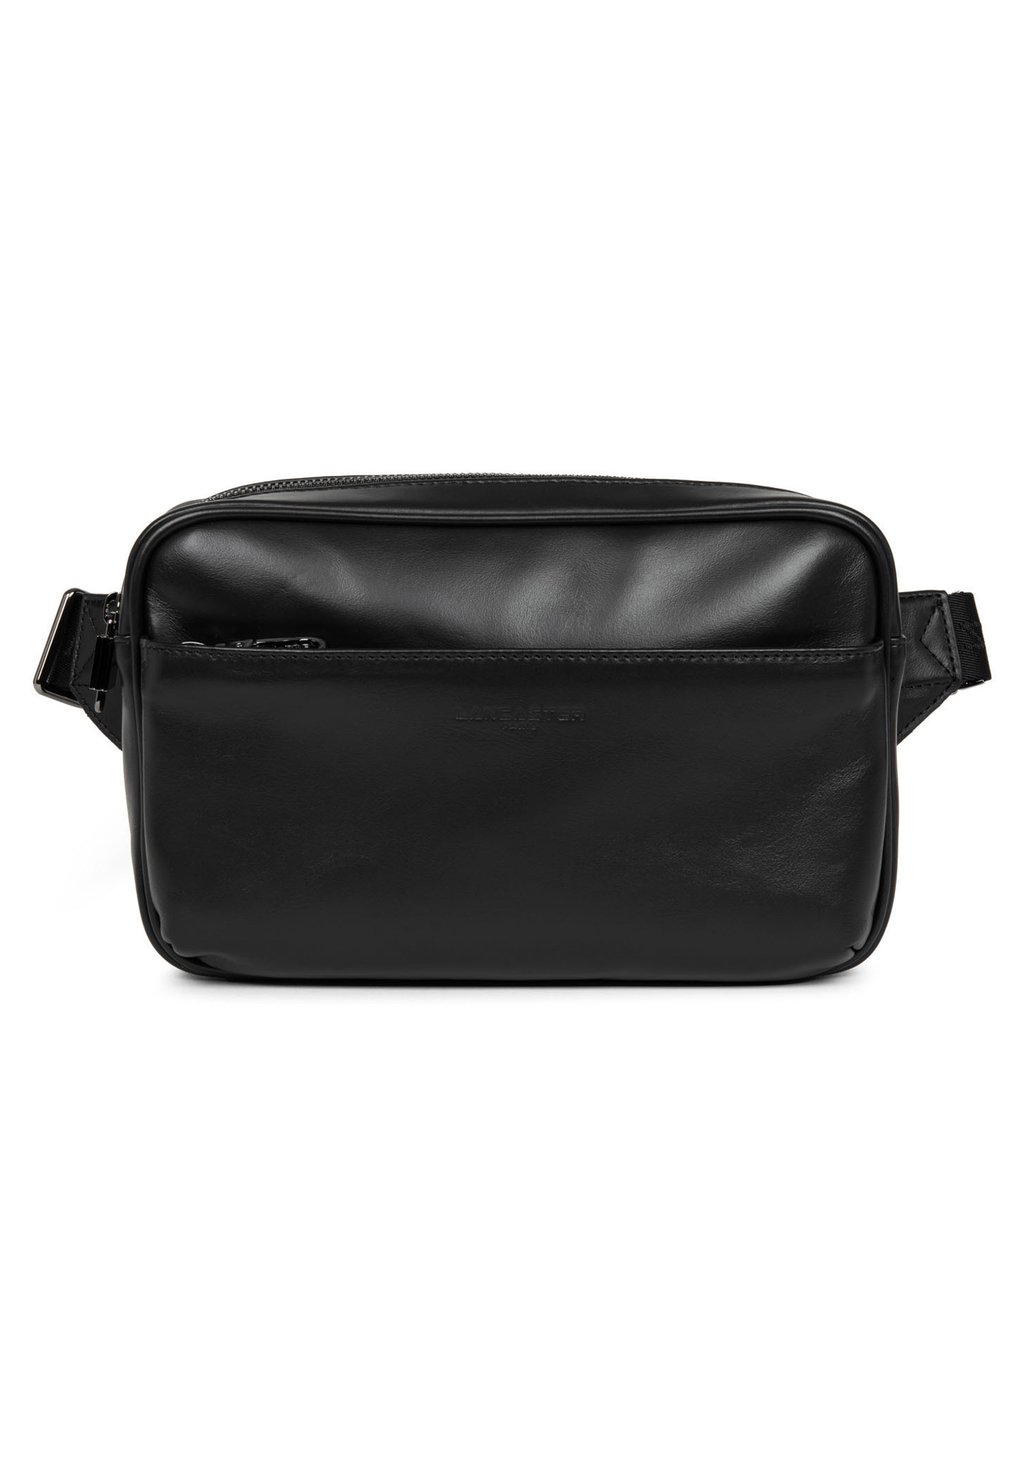 Поясная сумка LANCASTER, цвет noir сумка sierra lancaster цвет noir